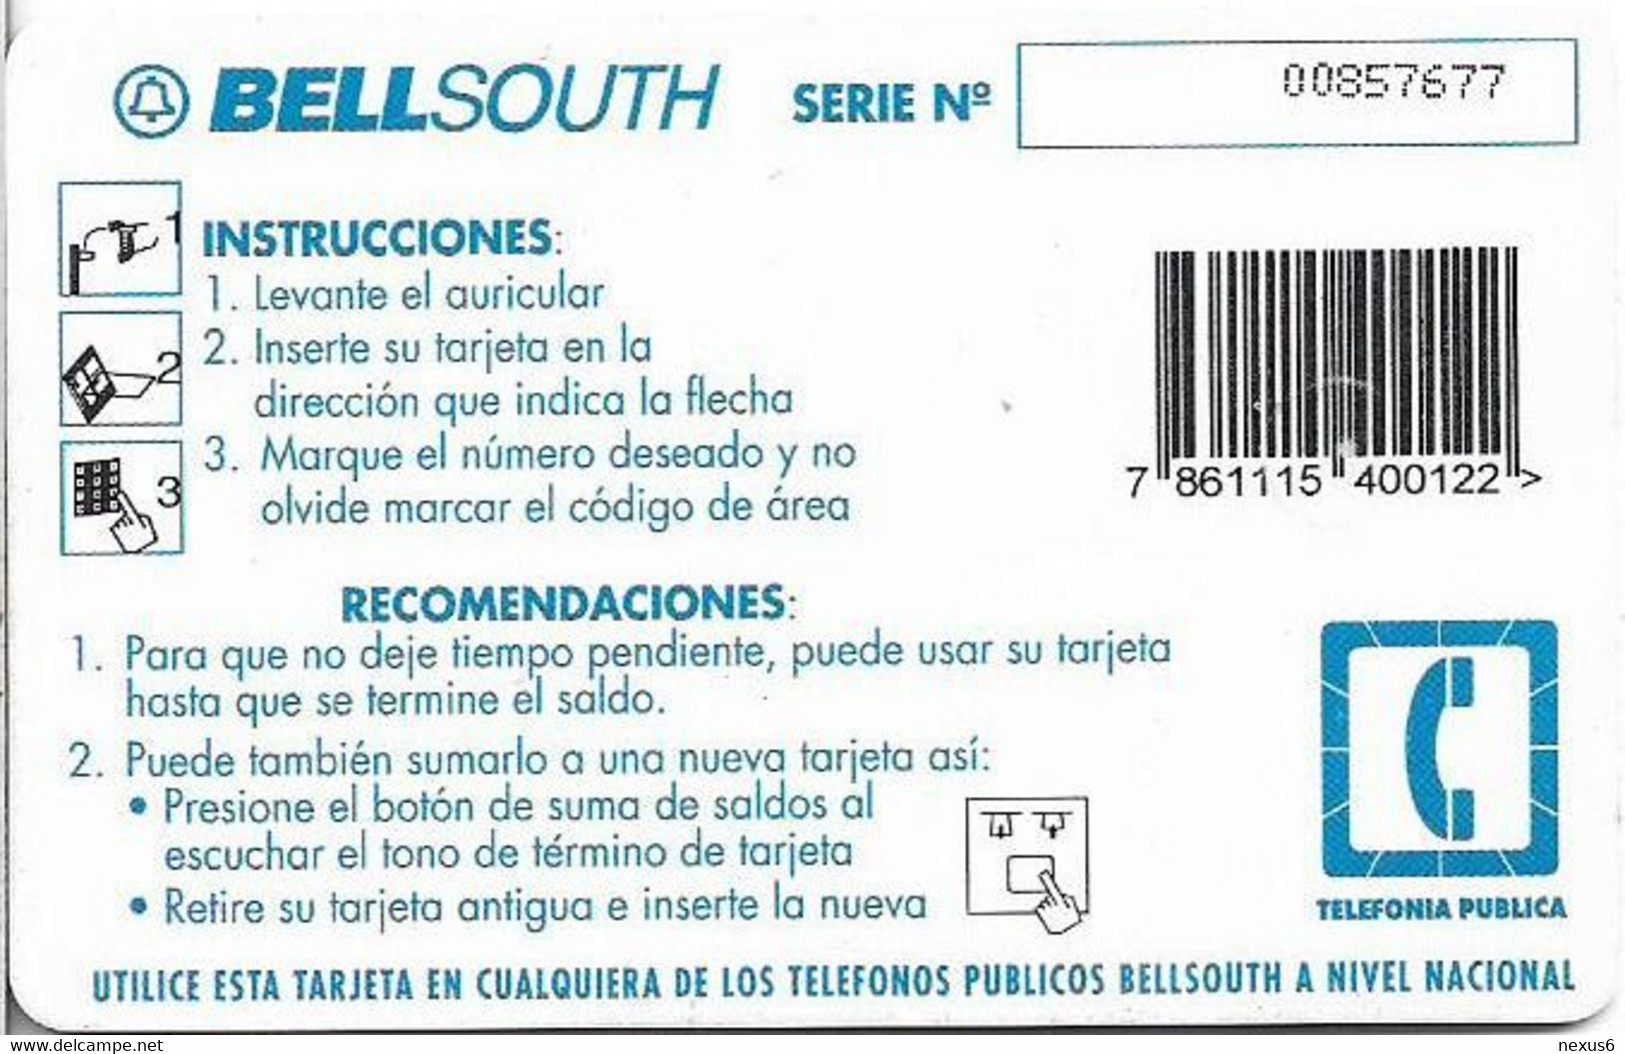 Ecuador - Bell South - Pagá Menos, 20% Gratis, Gem1B Not Symm. White/Gold, 80.000Sucre, Used - Equateur